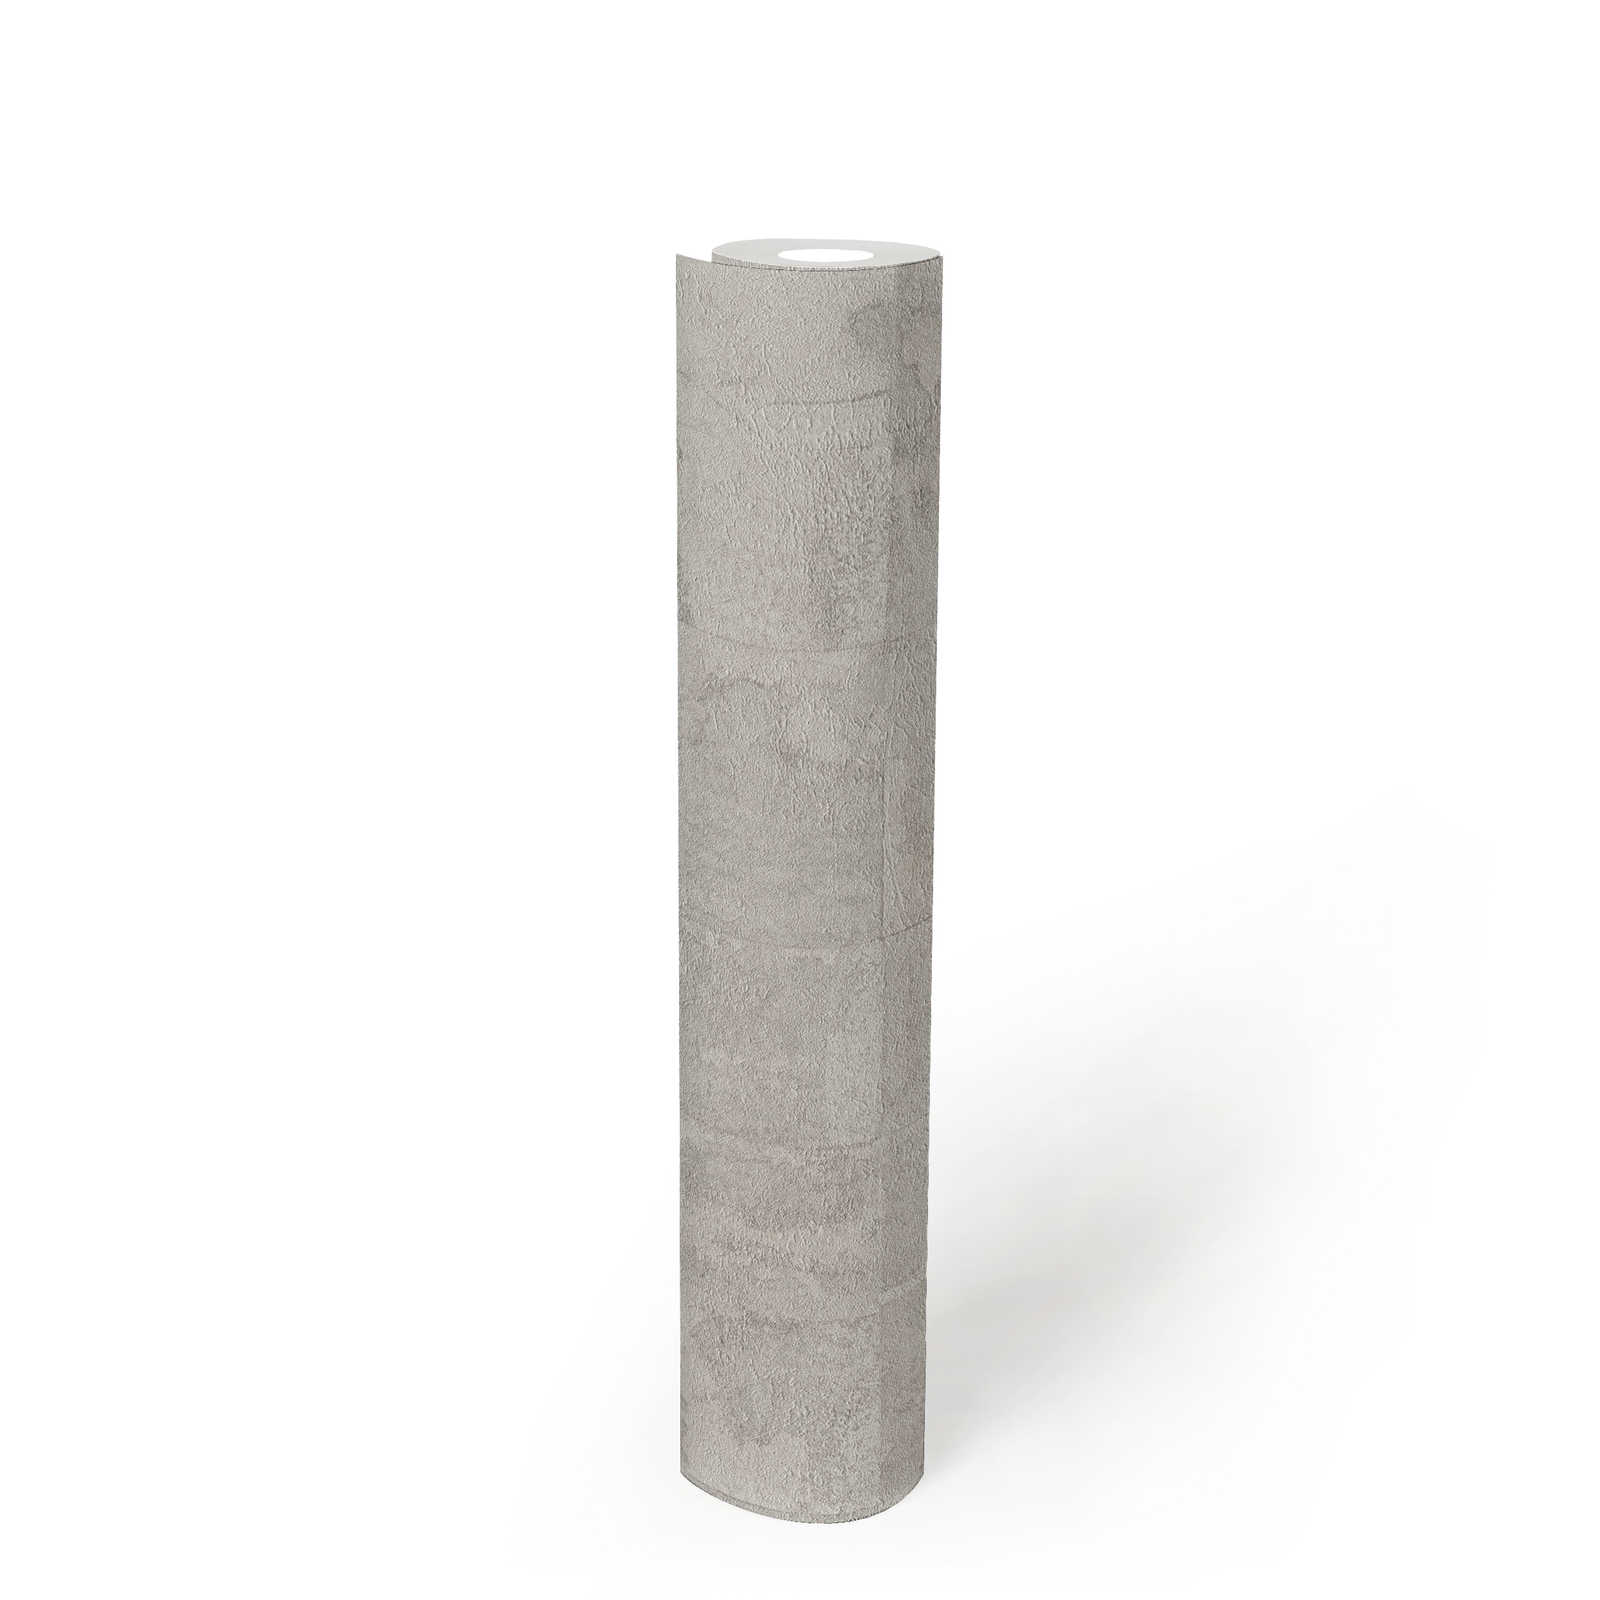             Papel pintado texturizado con aspecto de baldosa - gris claro, plata
        